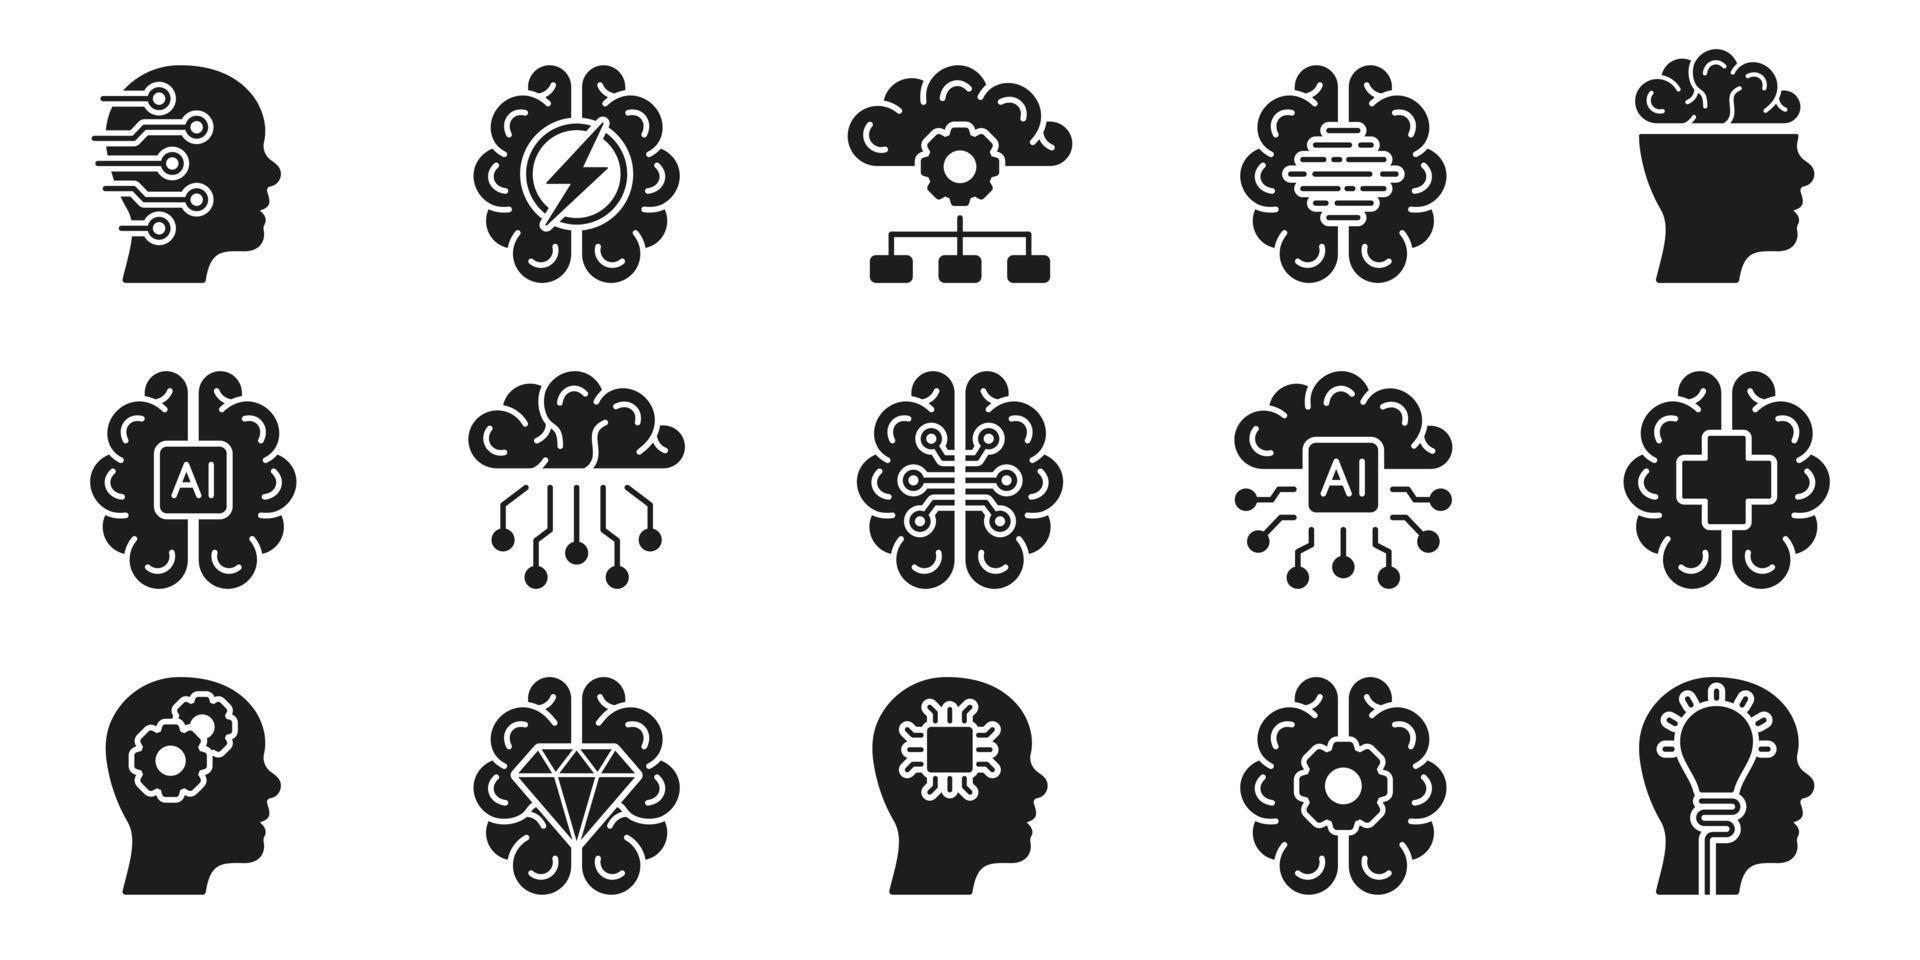 spåna, mänsklig sinne, påfrestning, artificiell intelligens fast symbol samling på vit bakgrund. mänsklig hjärna och ai begrepp svart silhuett ikon uppsättning. isolerat vektor illustration.